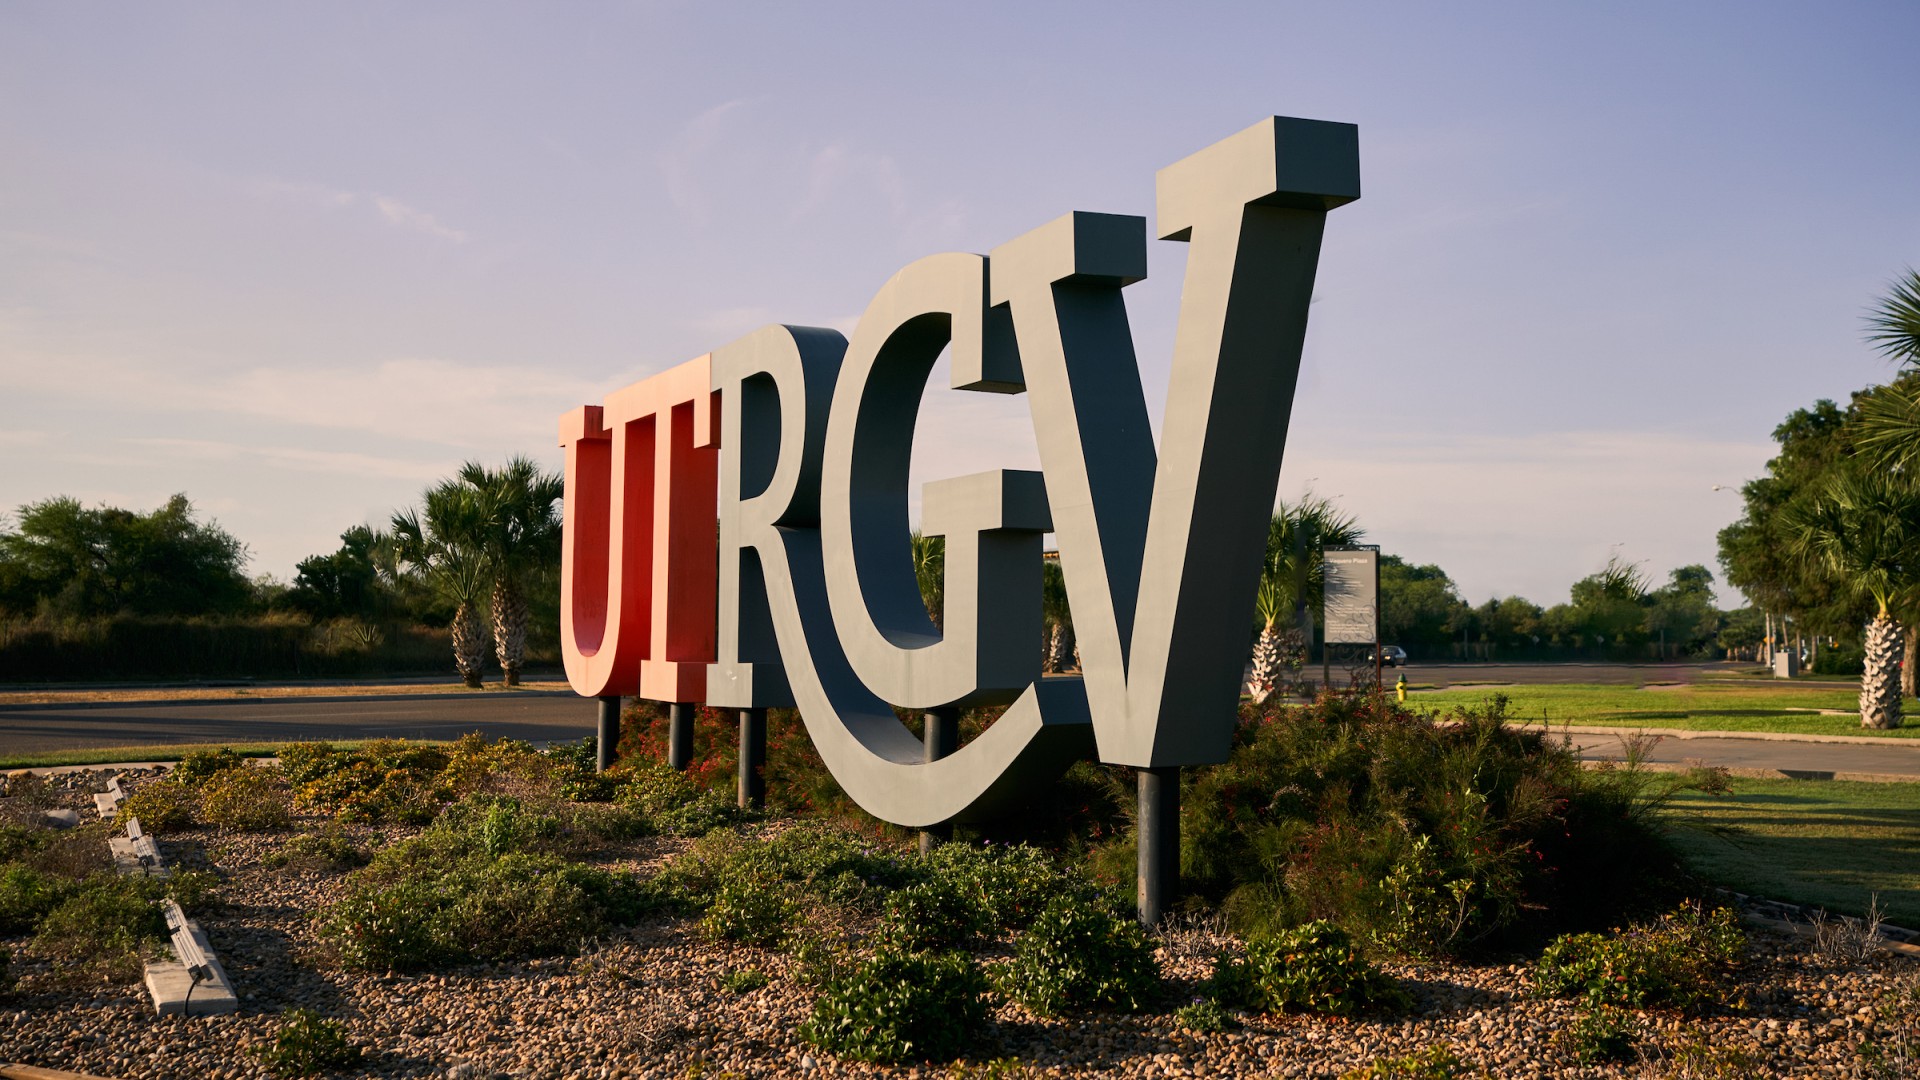 UTRGV sign